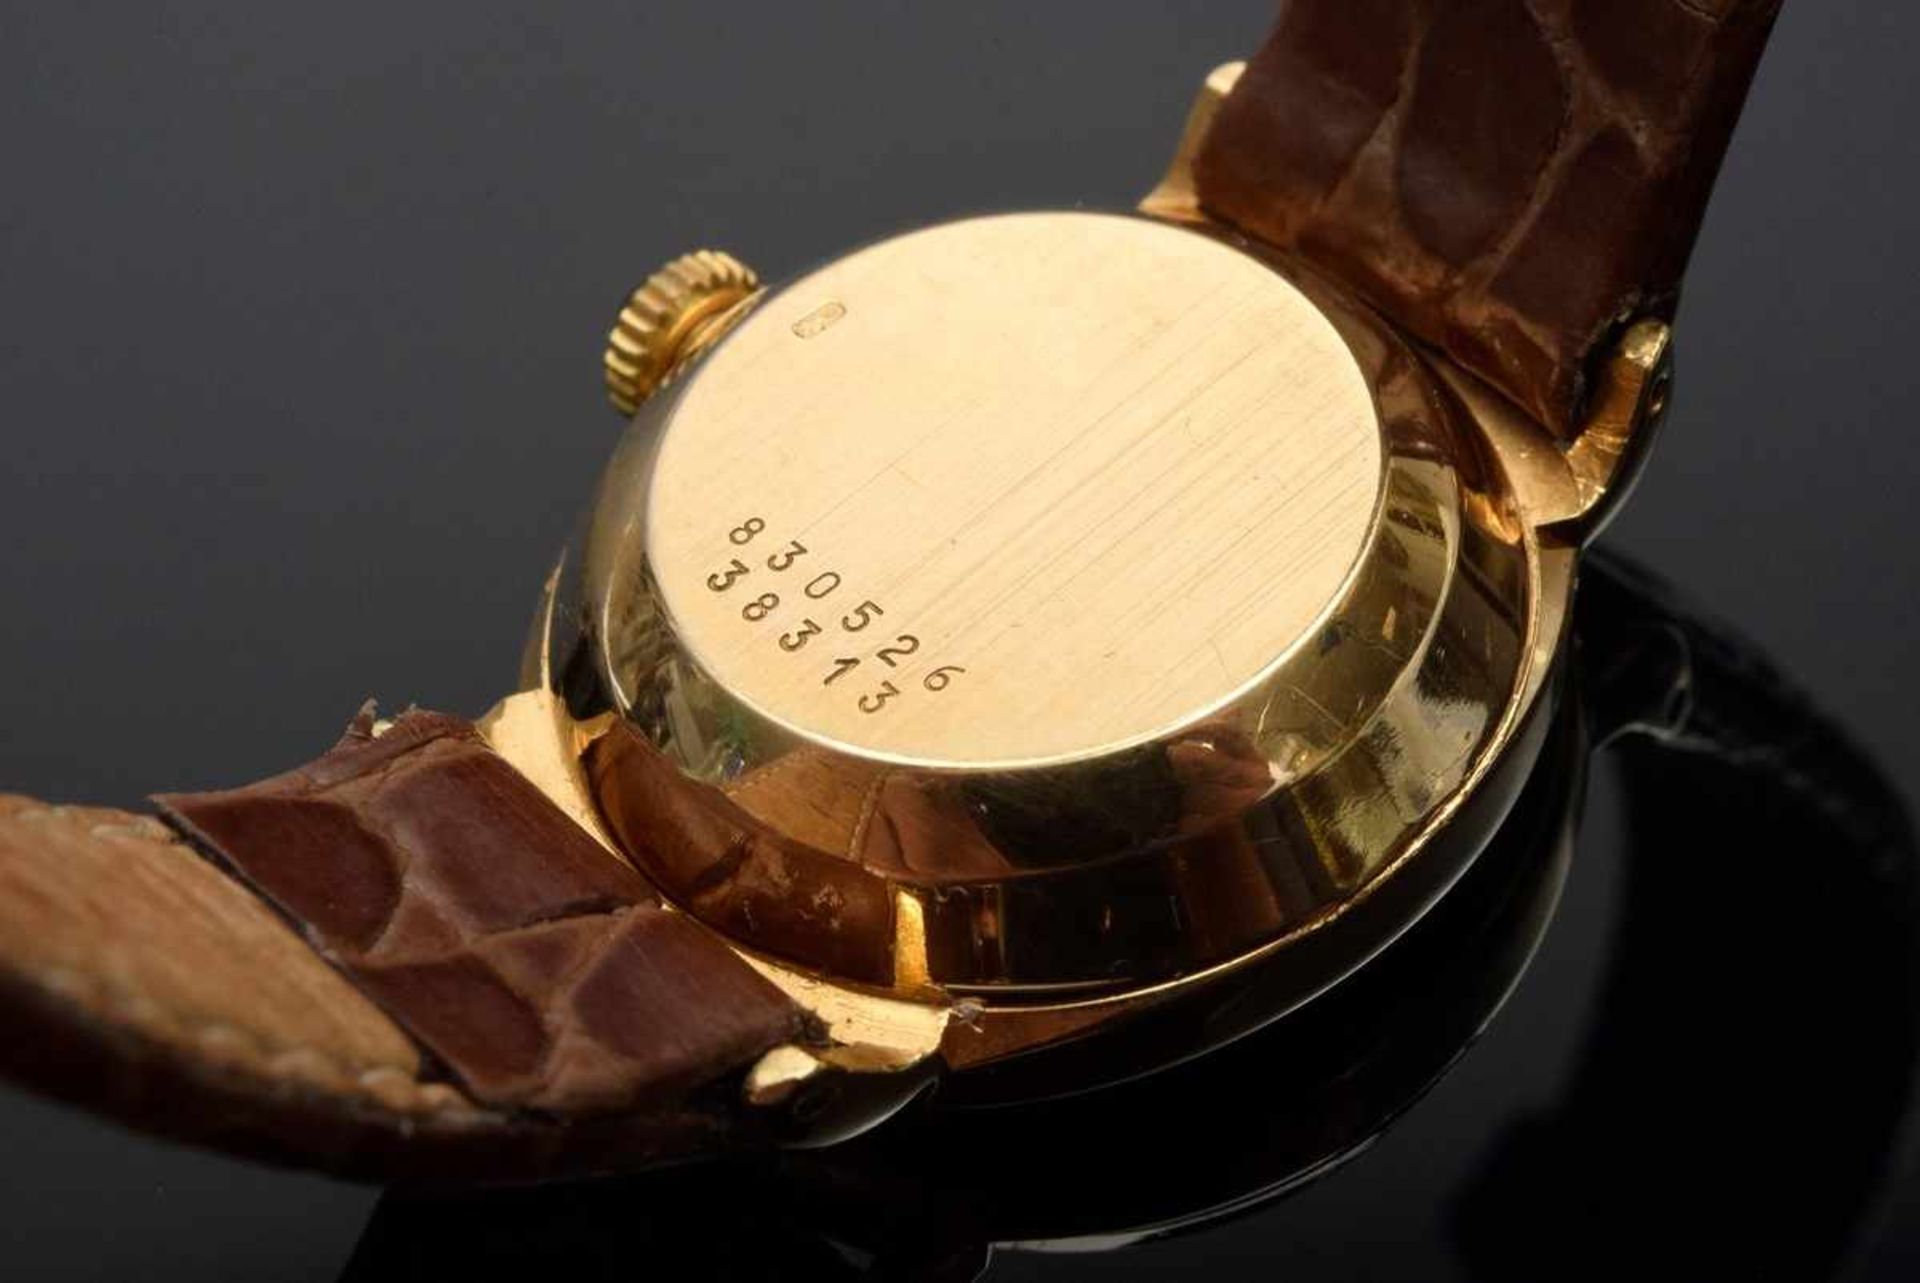 Ovale Baume & Mercier RG 750 Damenarmbanduhr, Automatic, Sekundenzeiger, römische Ziffern, - Bild 2 aus 3